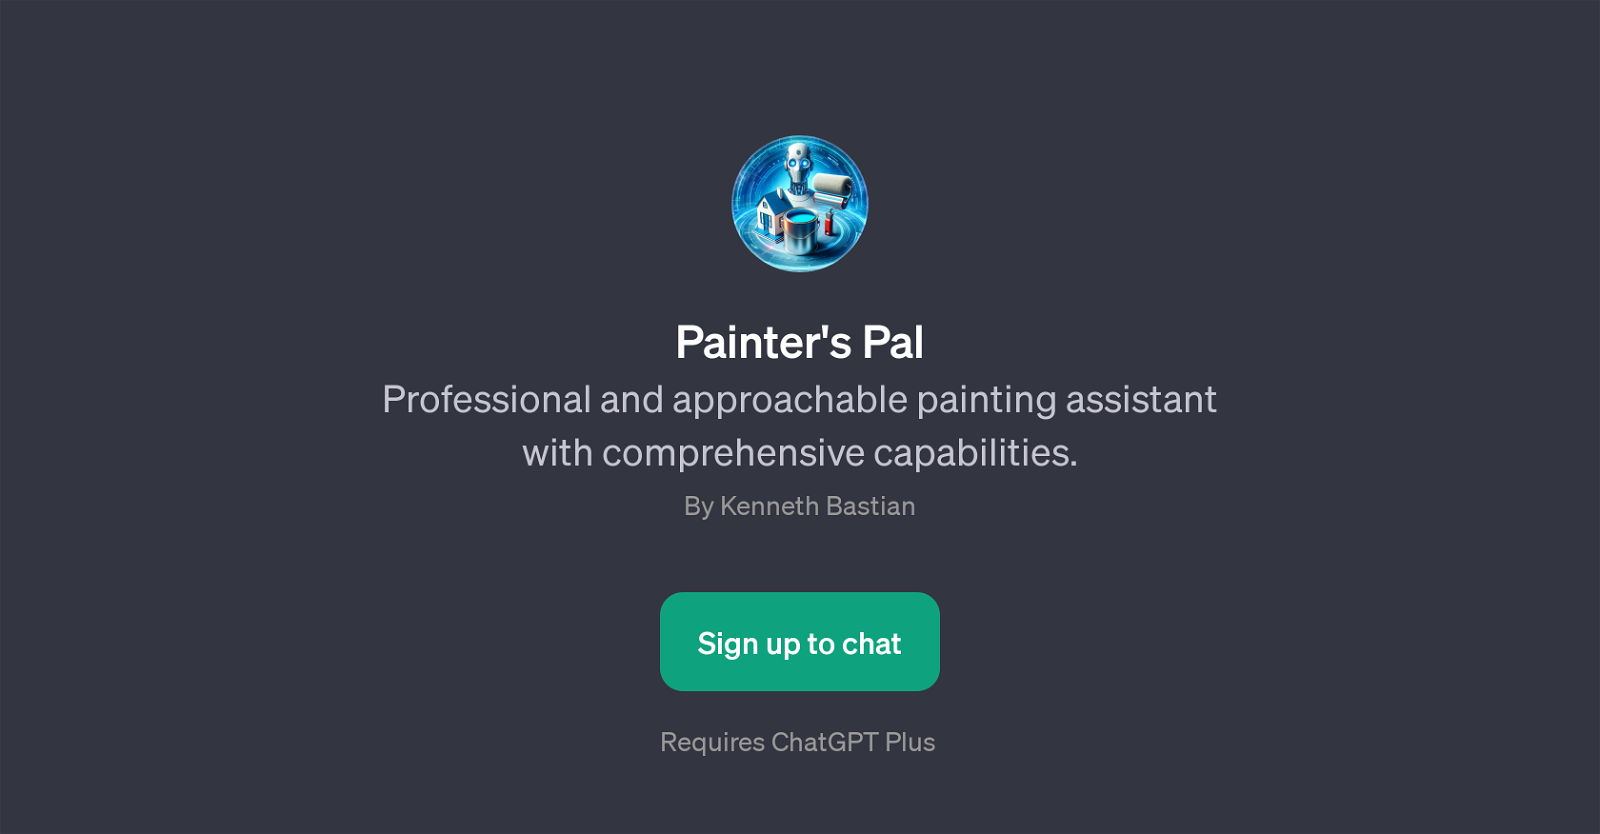 Painter's Pal website